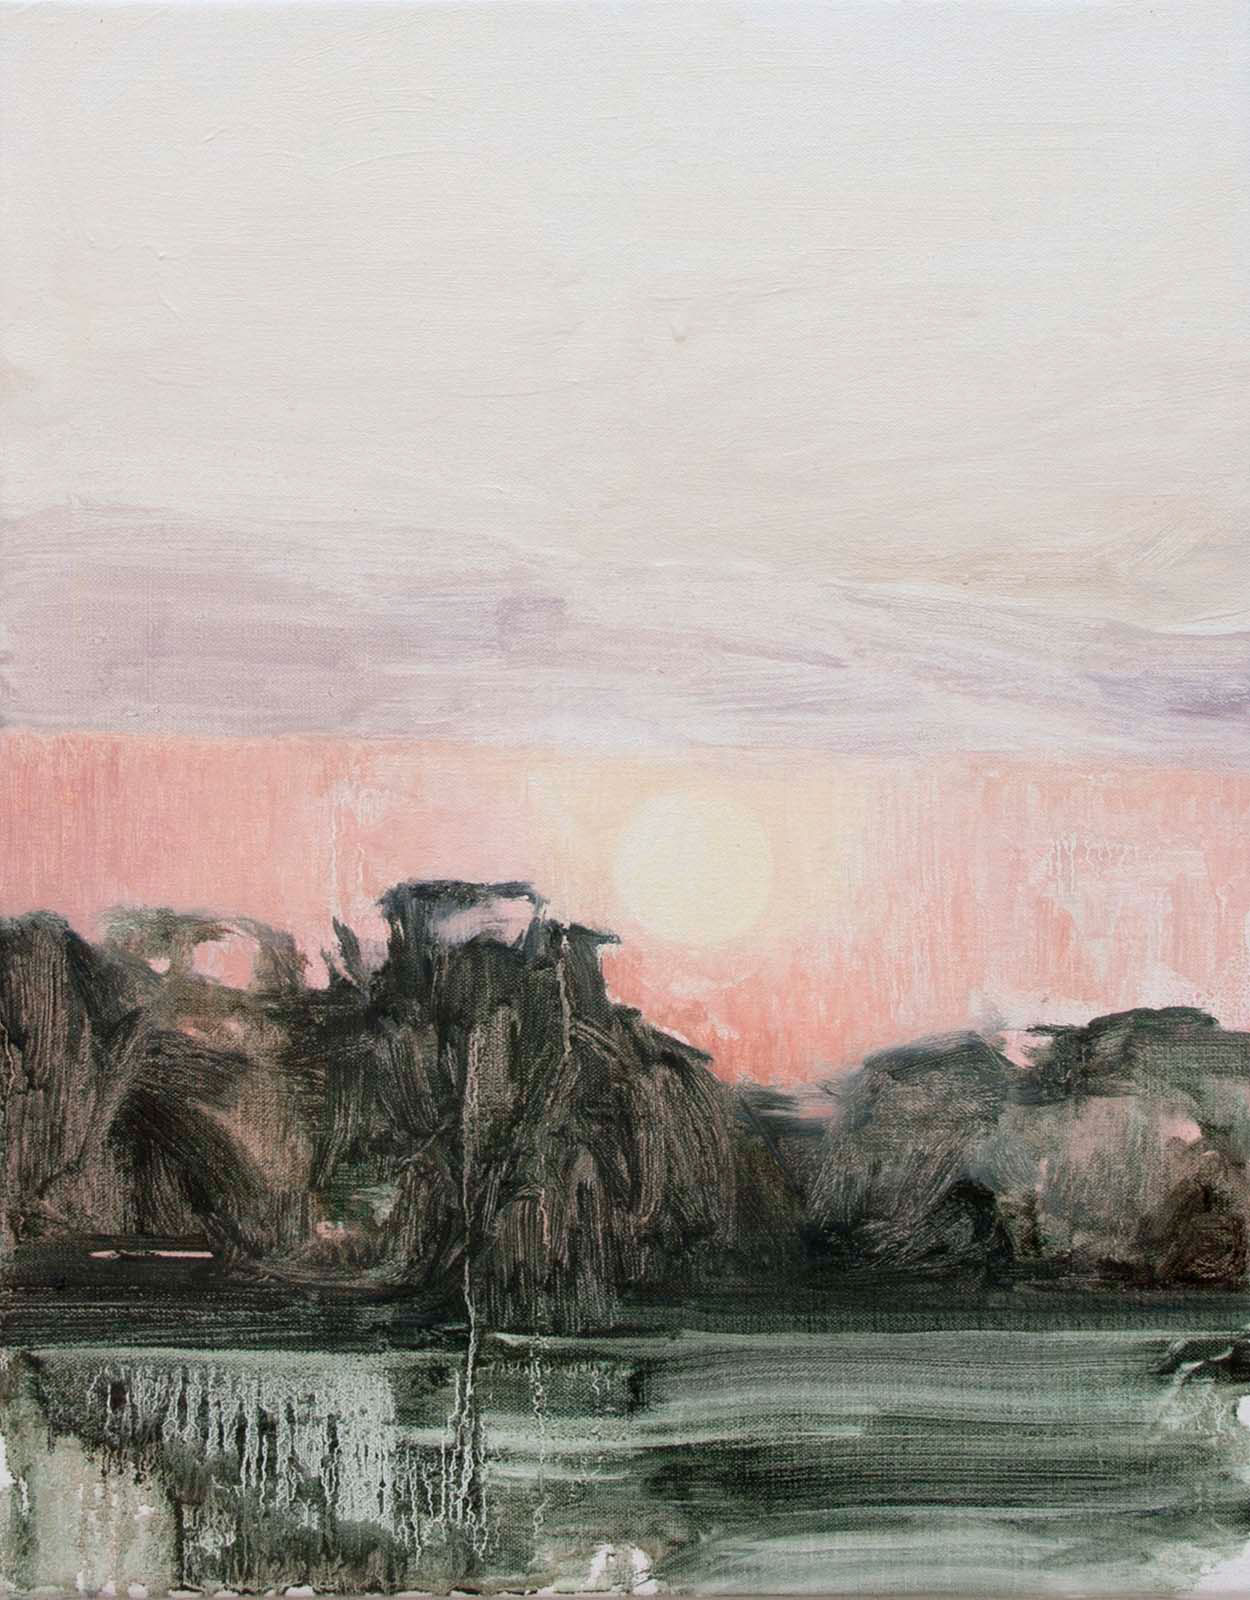 Johanna Fjaestad, "Sunset", 2015, oil on canvas, 45 x 35 cm